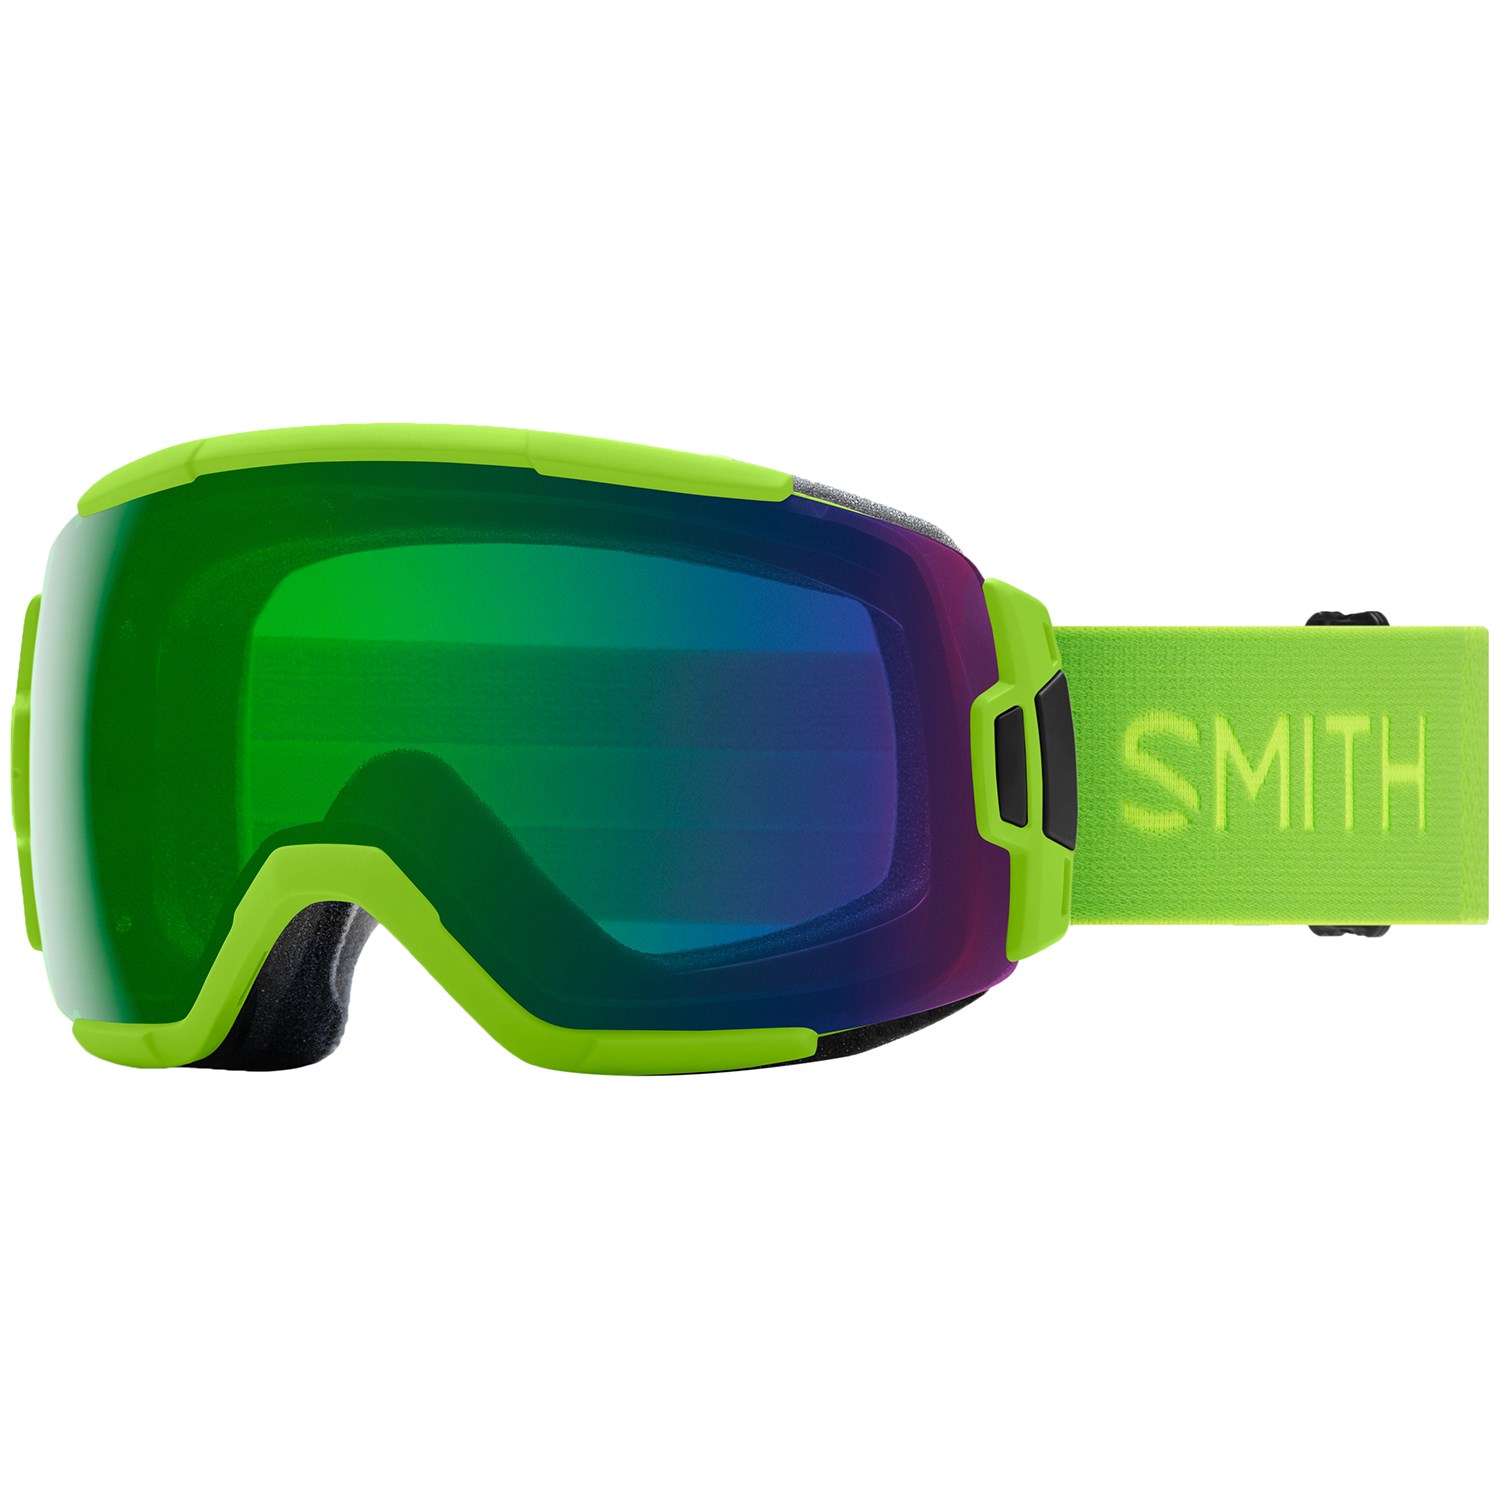 Smith Vice Low Bridge Fit Goggles | evo